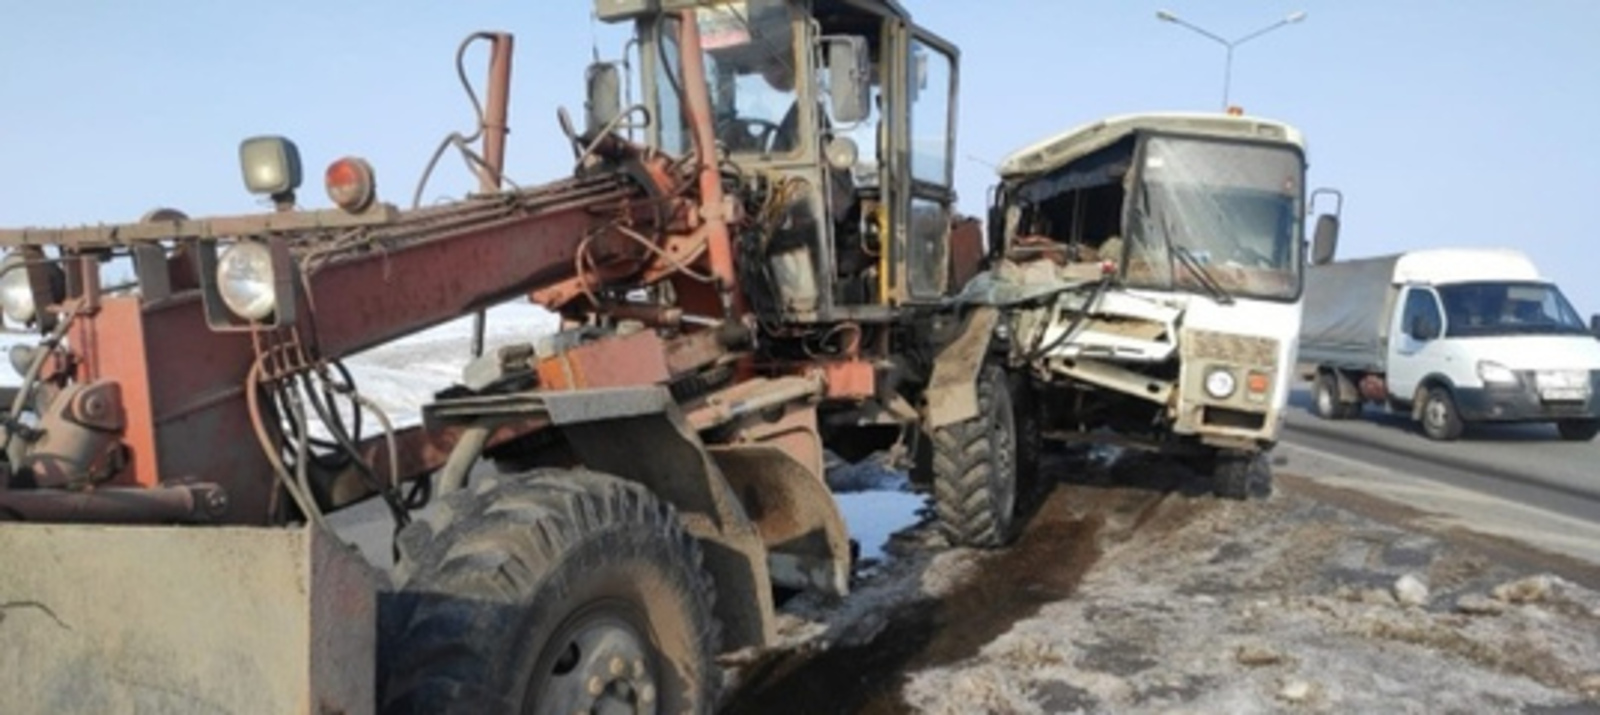 В Башкортостане на трассе М-7 автогрейдер столкнулся с вахтовым автобусом